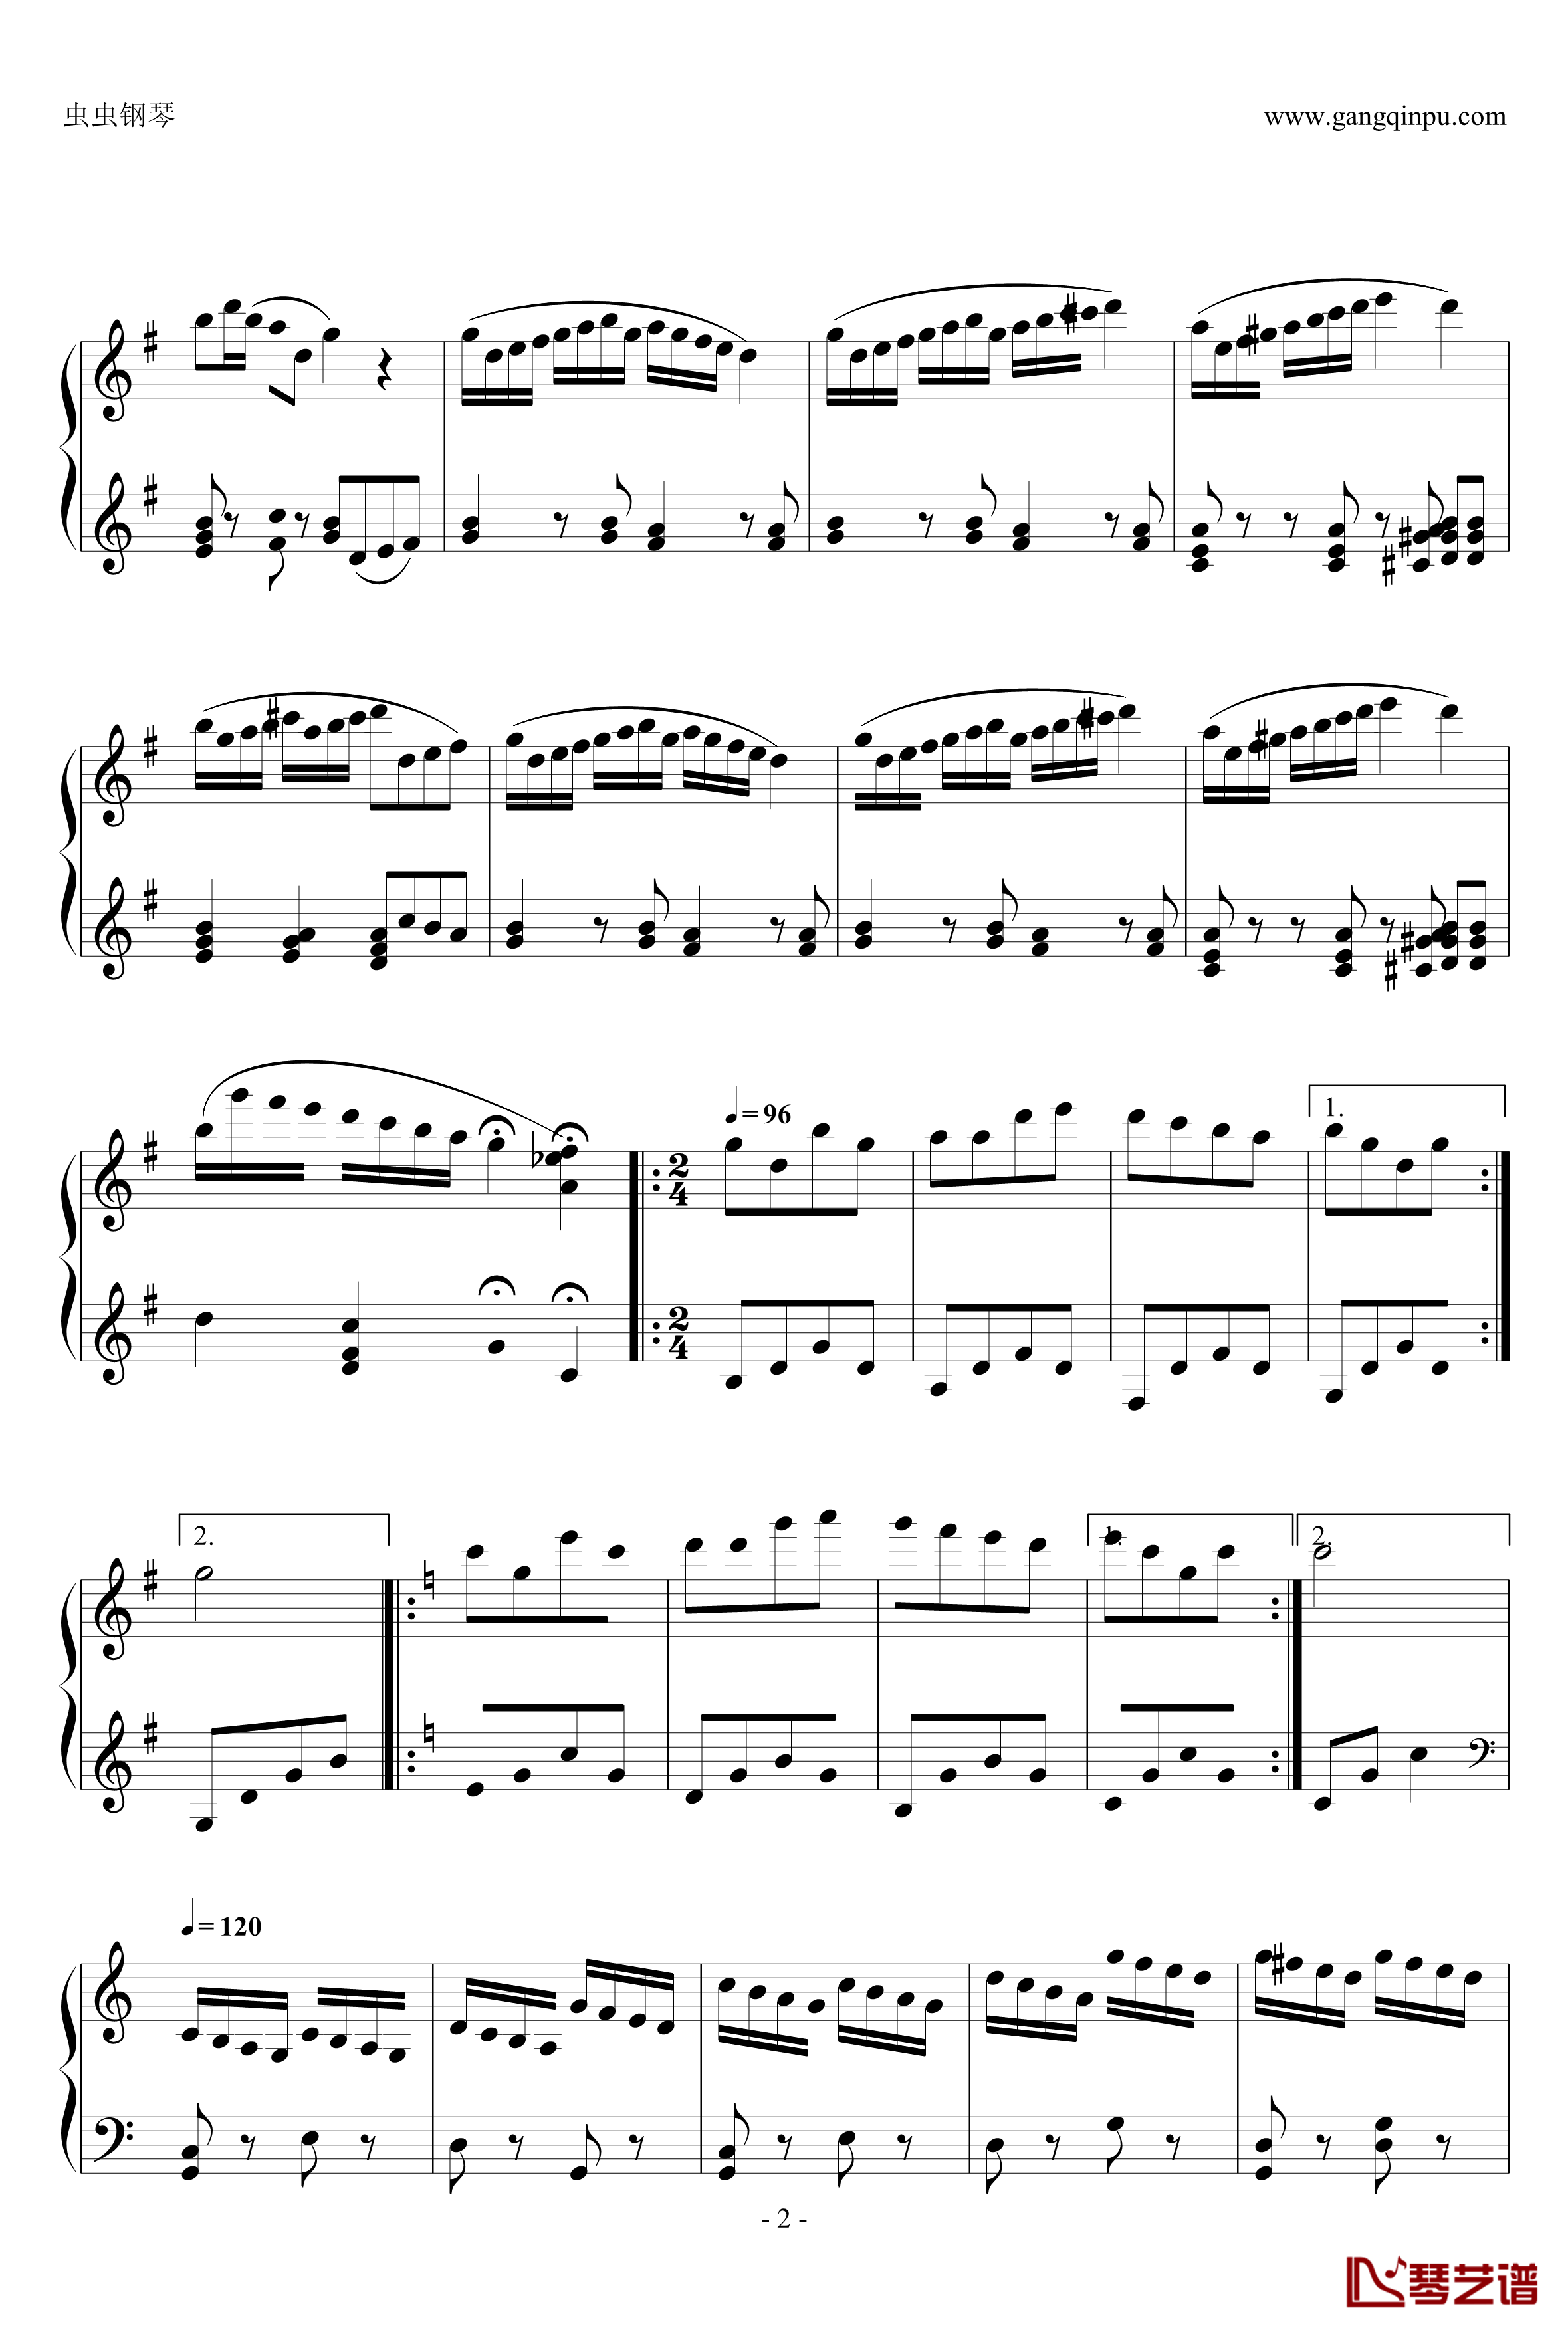 共产儿童团歌钢琴谱-简易变奏曲-甘壁华2